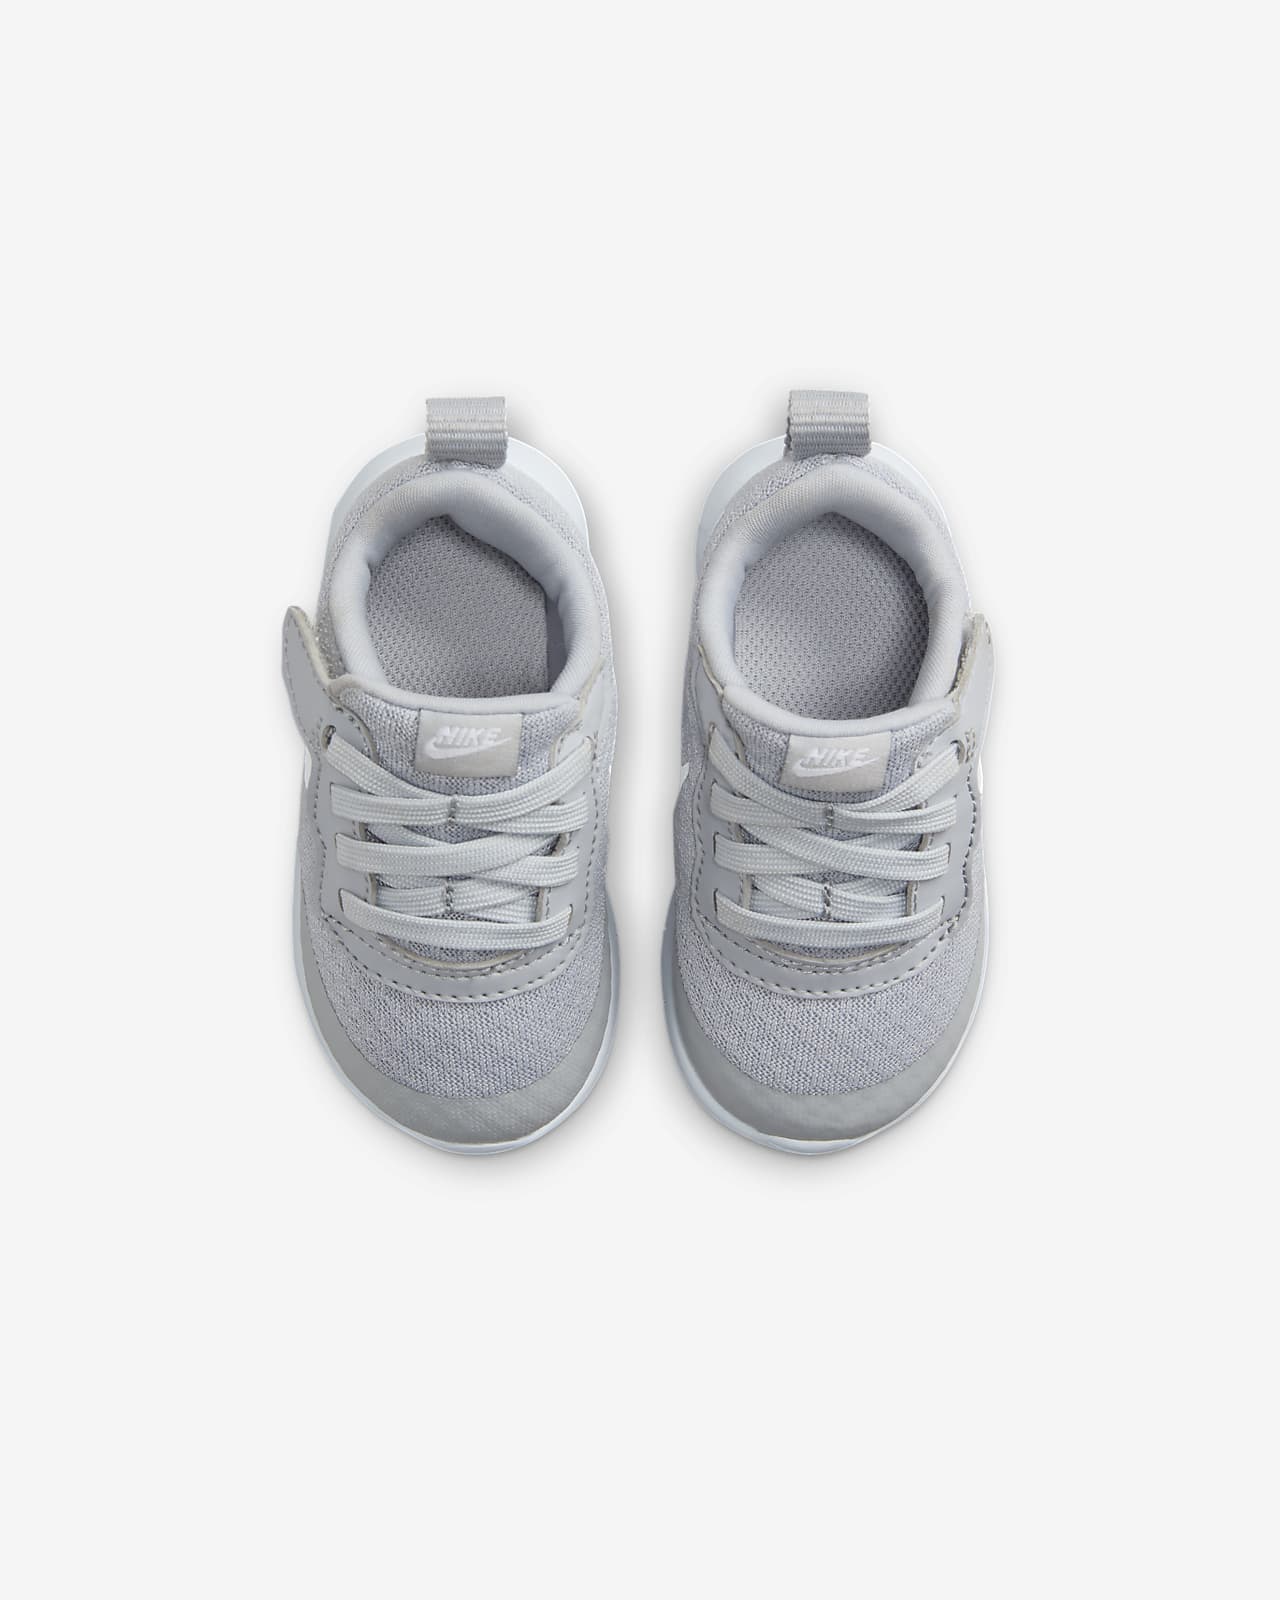 EasyOn Baby/Toddler Tanjun Nike Shoes.